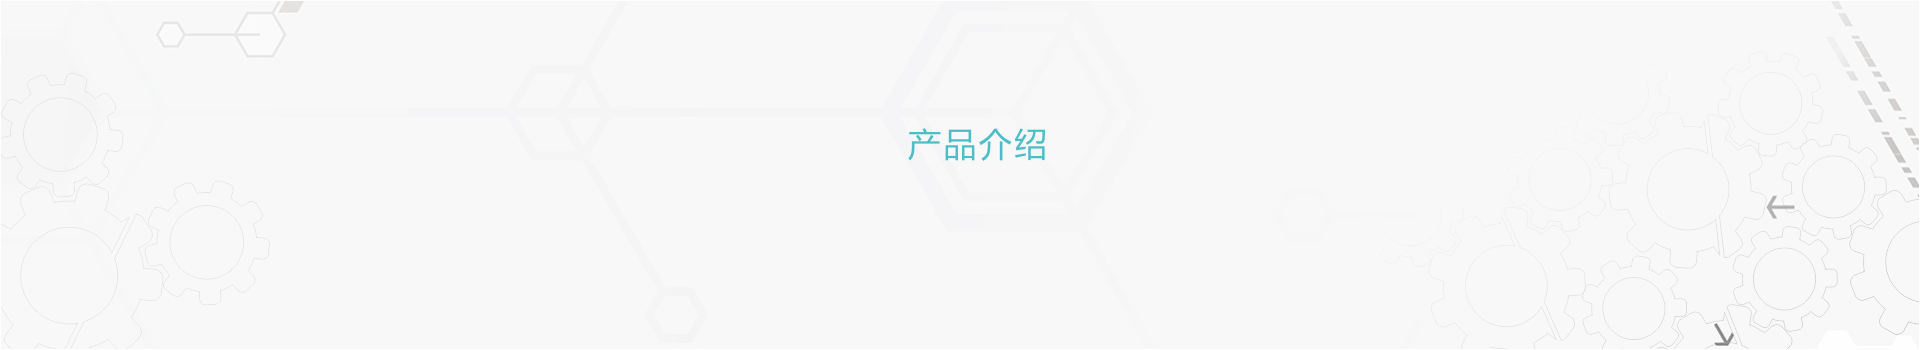 爱游戏官网:江苏汇讯标识科技有限公司多米诺A+系列喷码机下市告诉